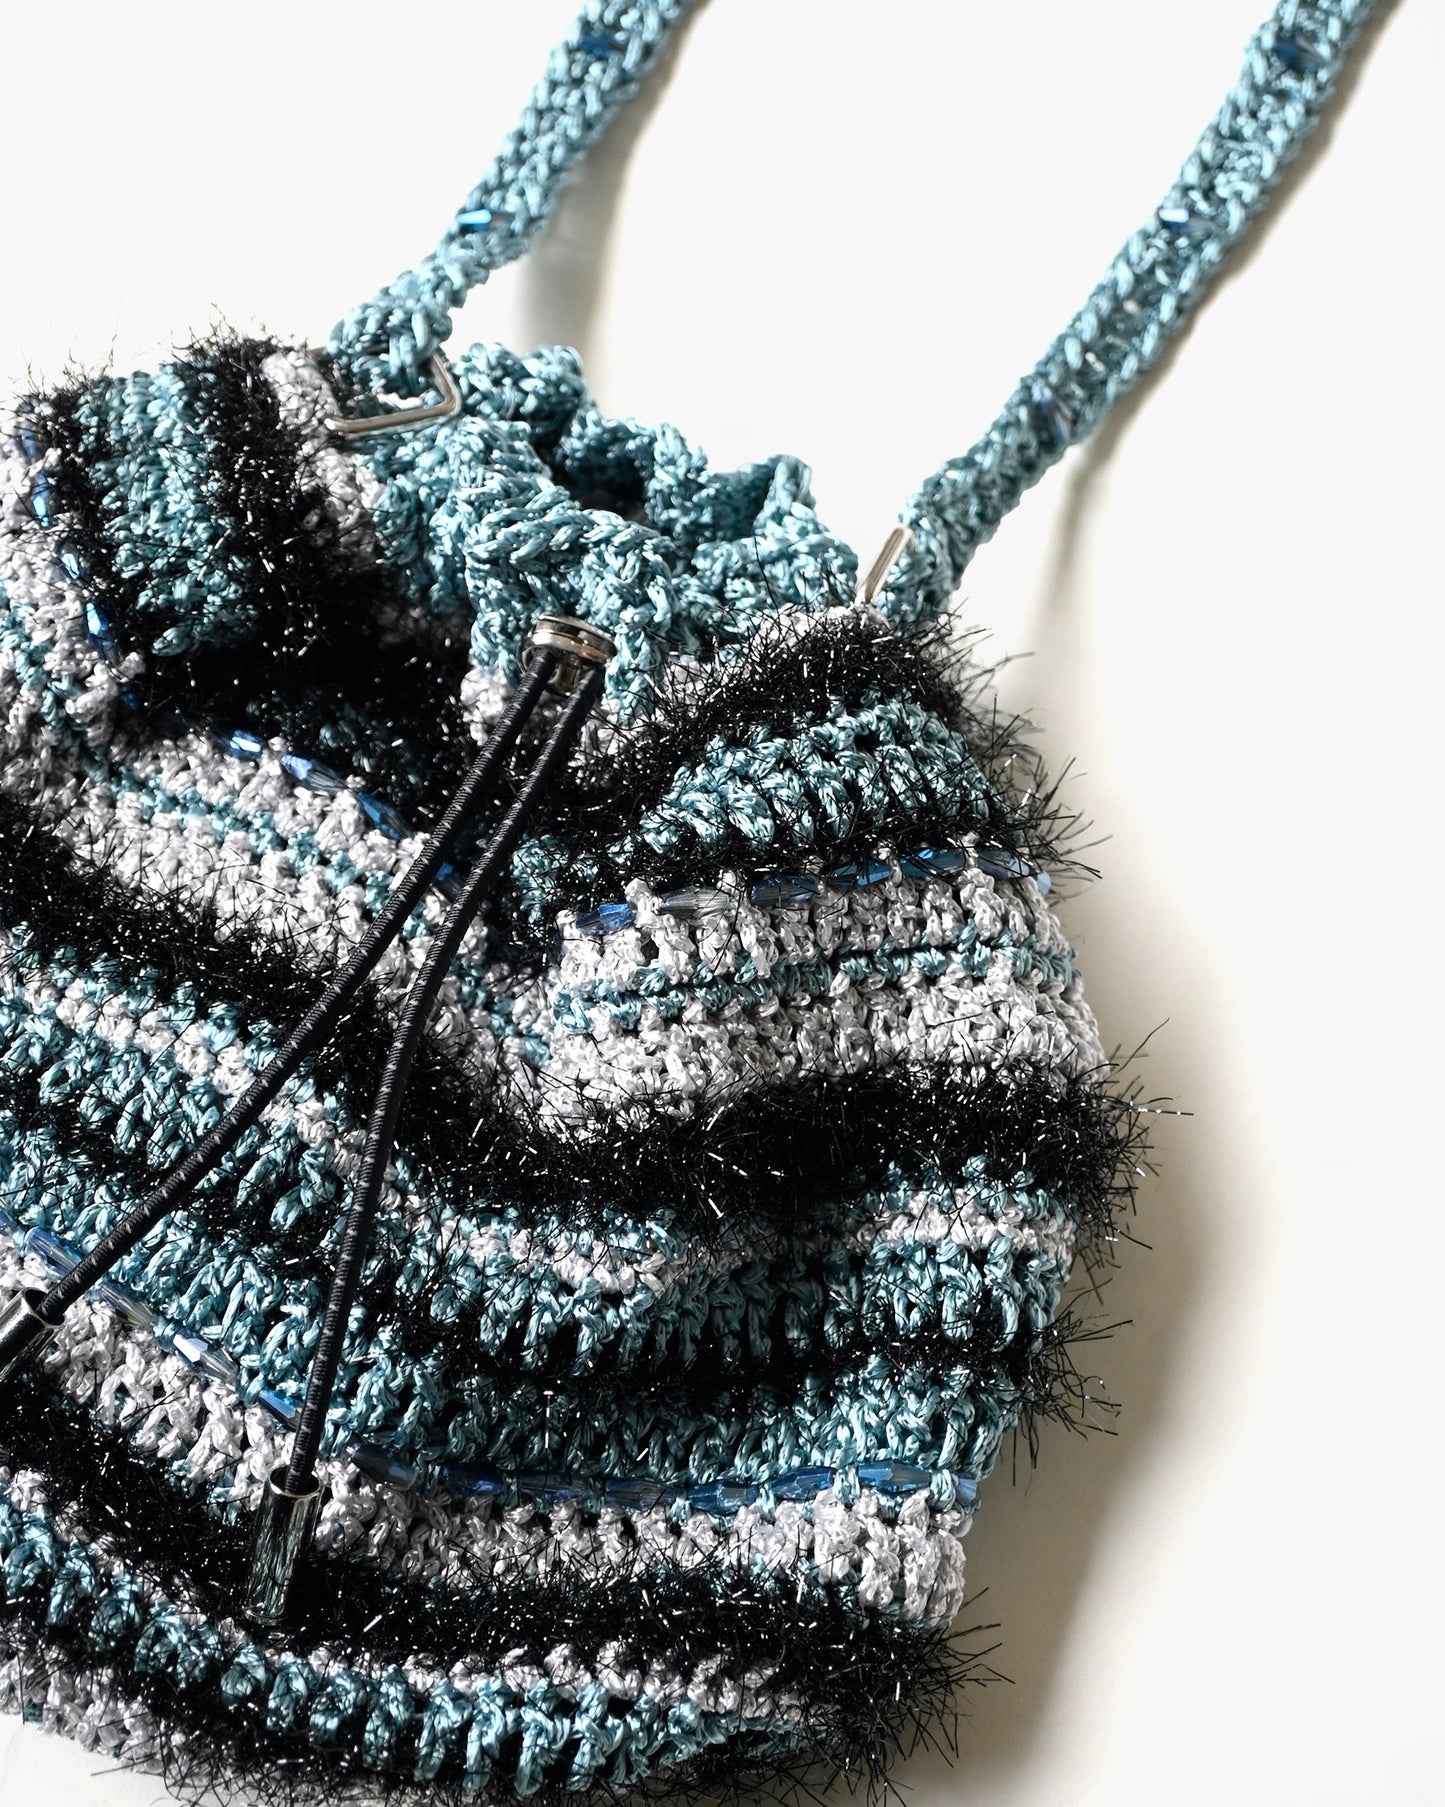 Hand Knitting Bag 06